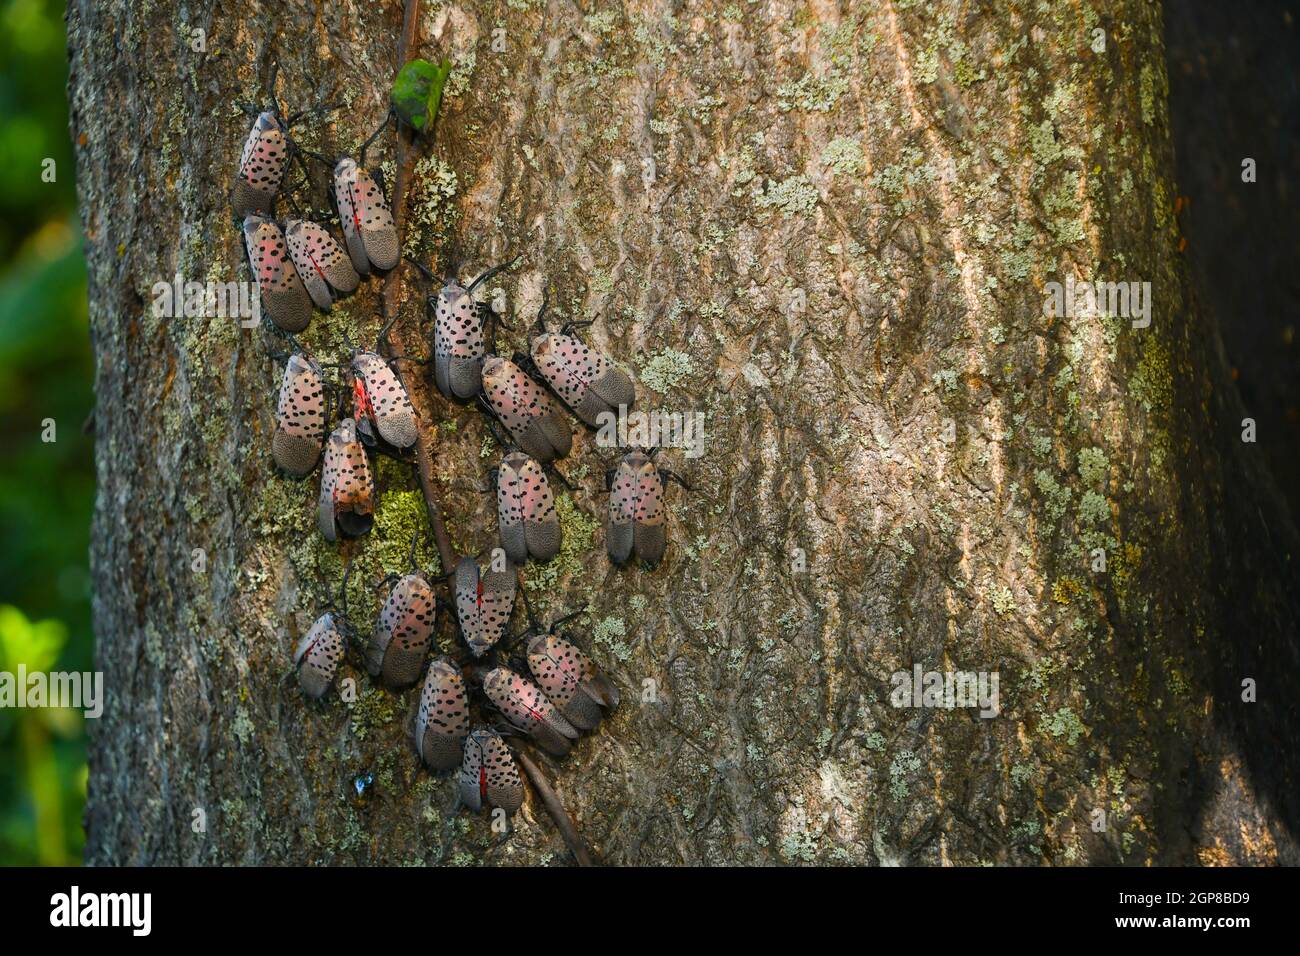 Les lanternflies tachetées envahissantes attaquent un arbre du ciel, le tuant dans le processus. Banque D'Images